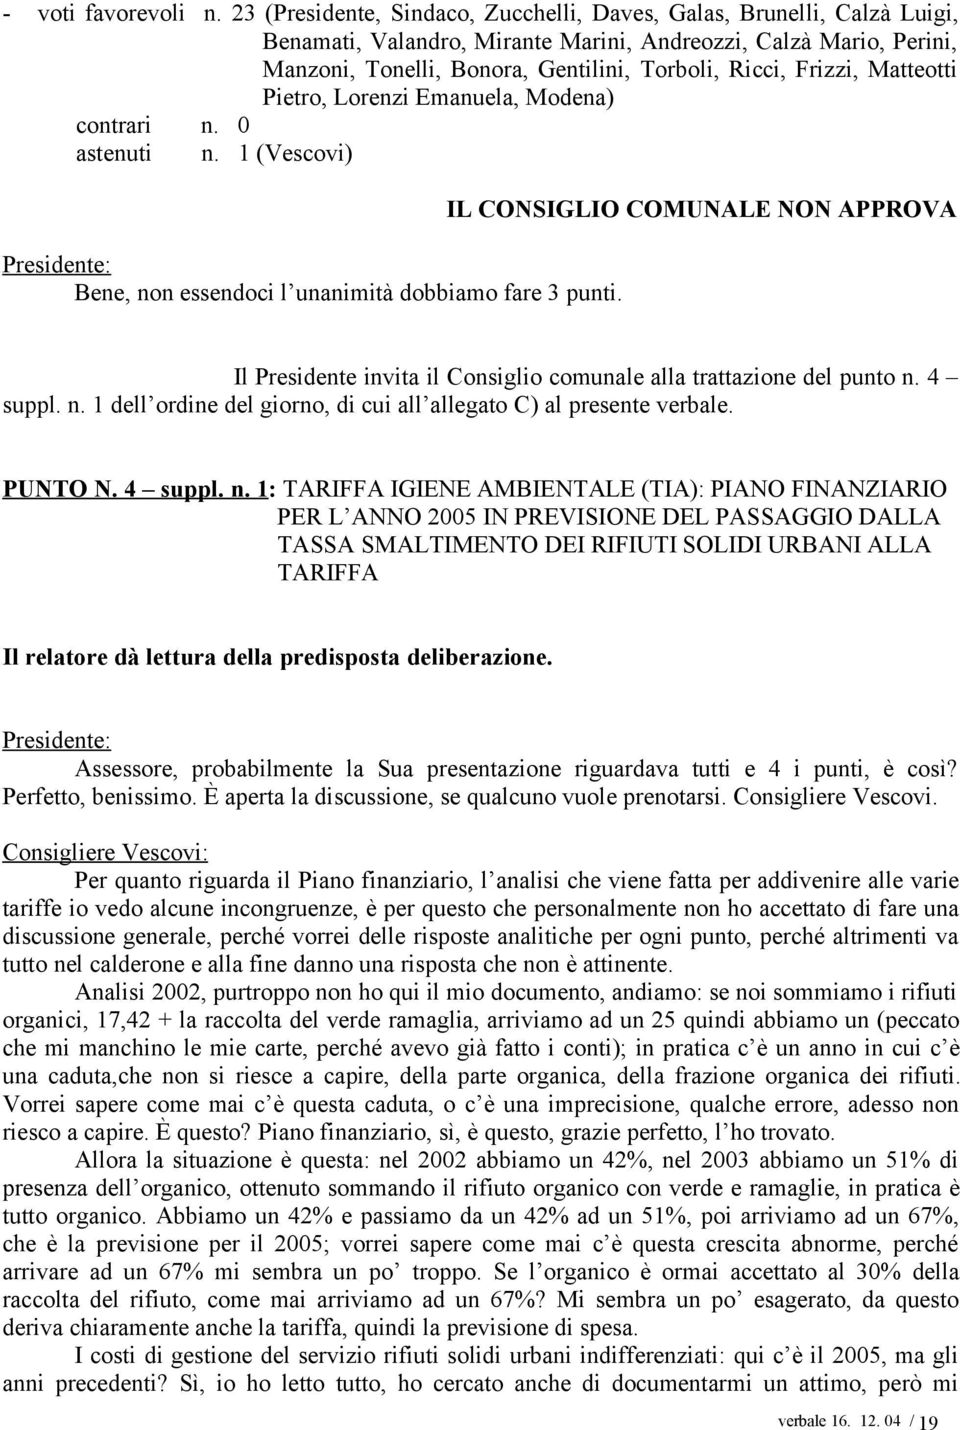 Frizzi, Matteotti Pietro, Lorenzi Emanuela, Modena) contrari n. 0 astenuti n. 1 (Vescovi) Bene, non essendoci l unanimità dobbiamo fare 3 punti.